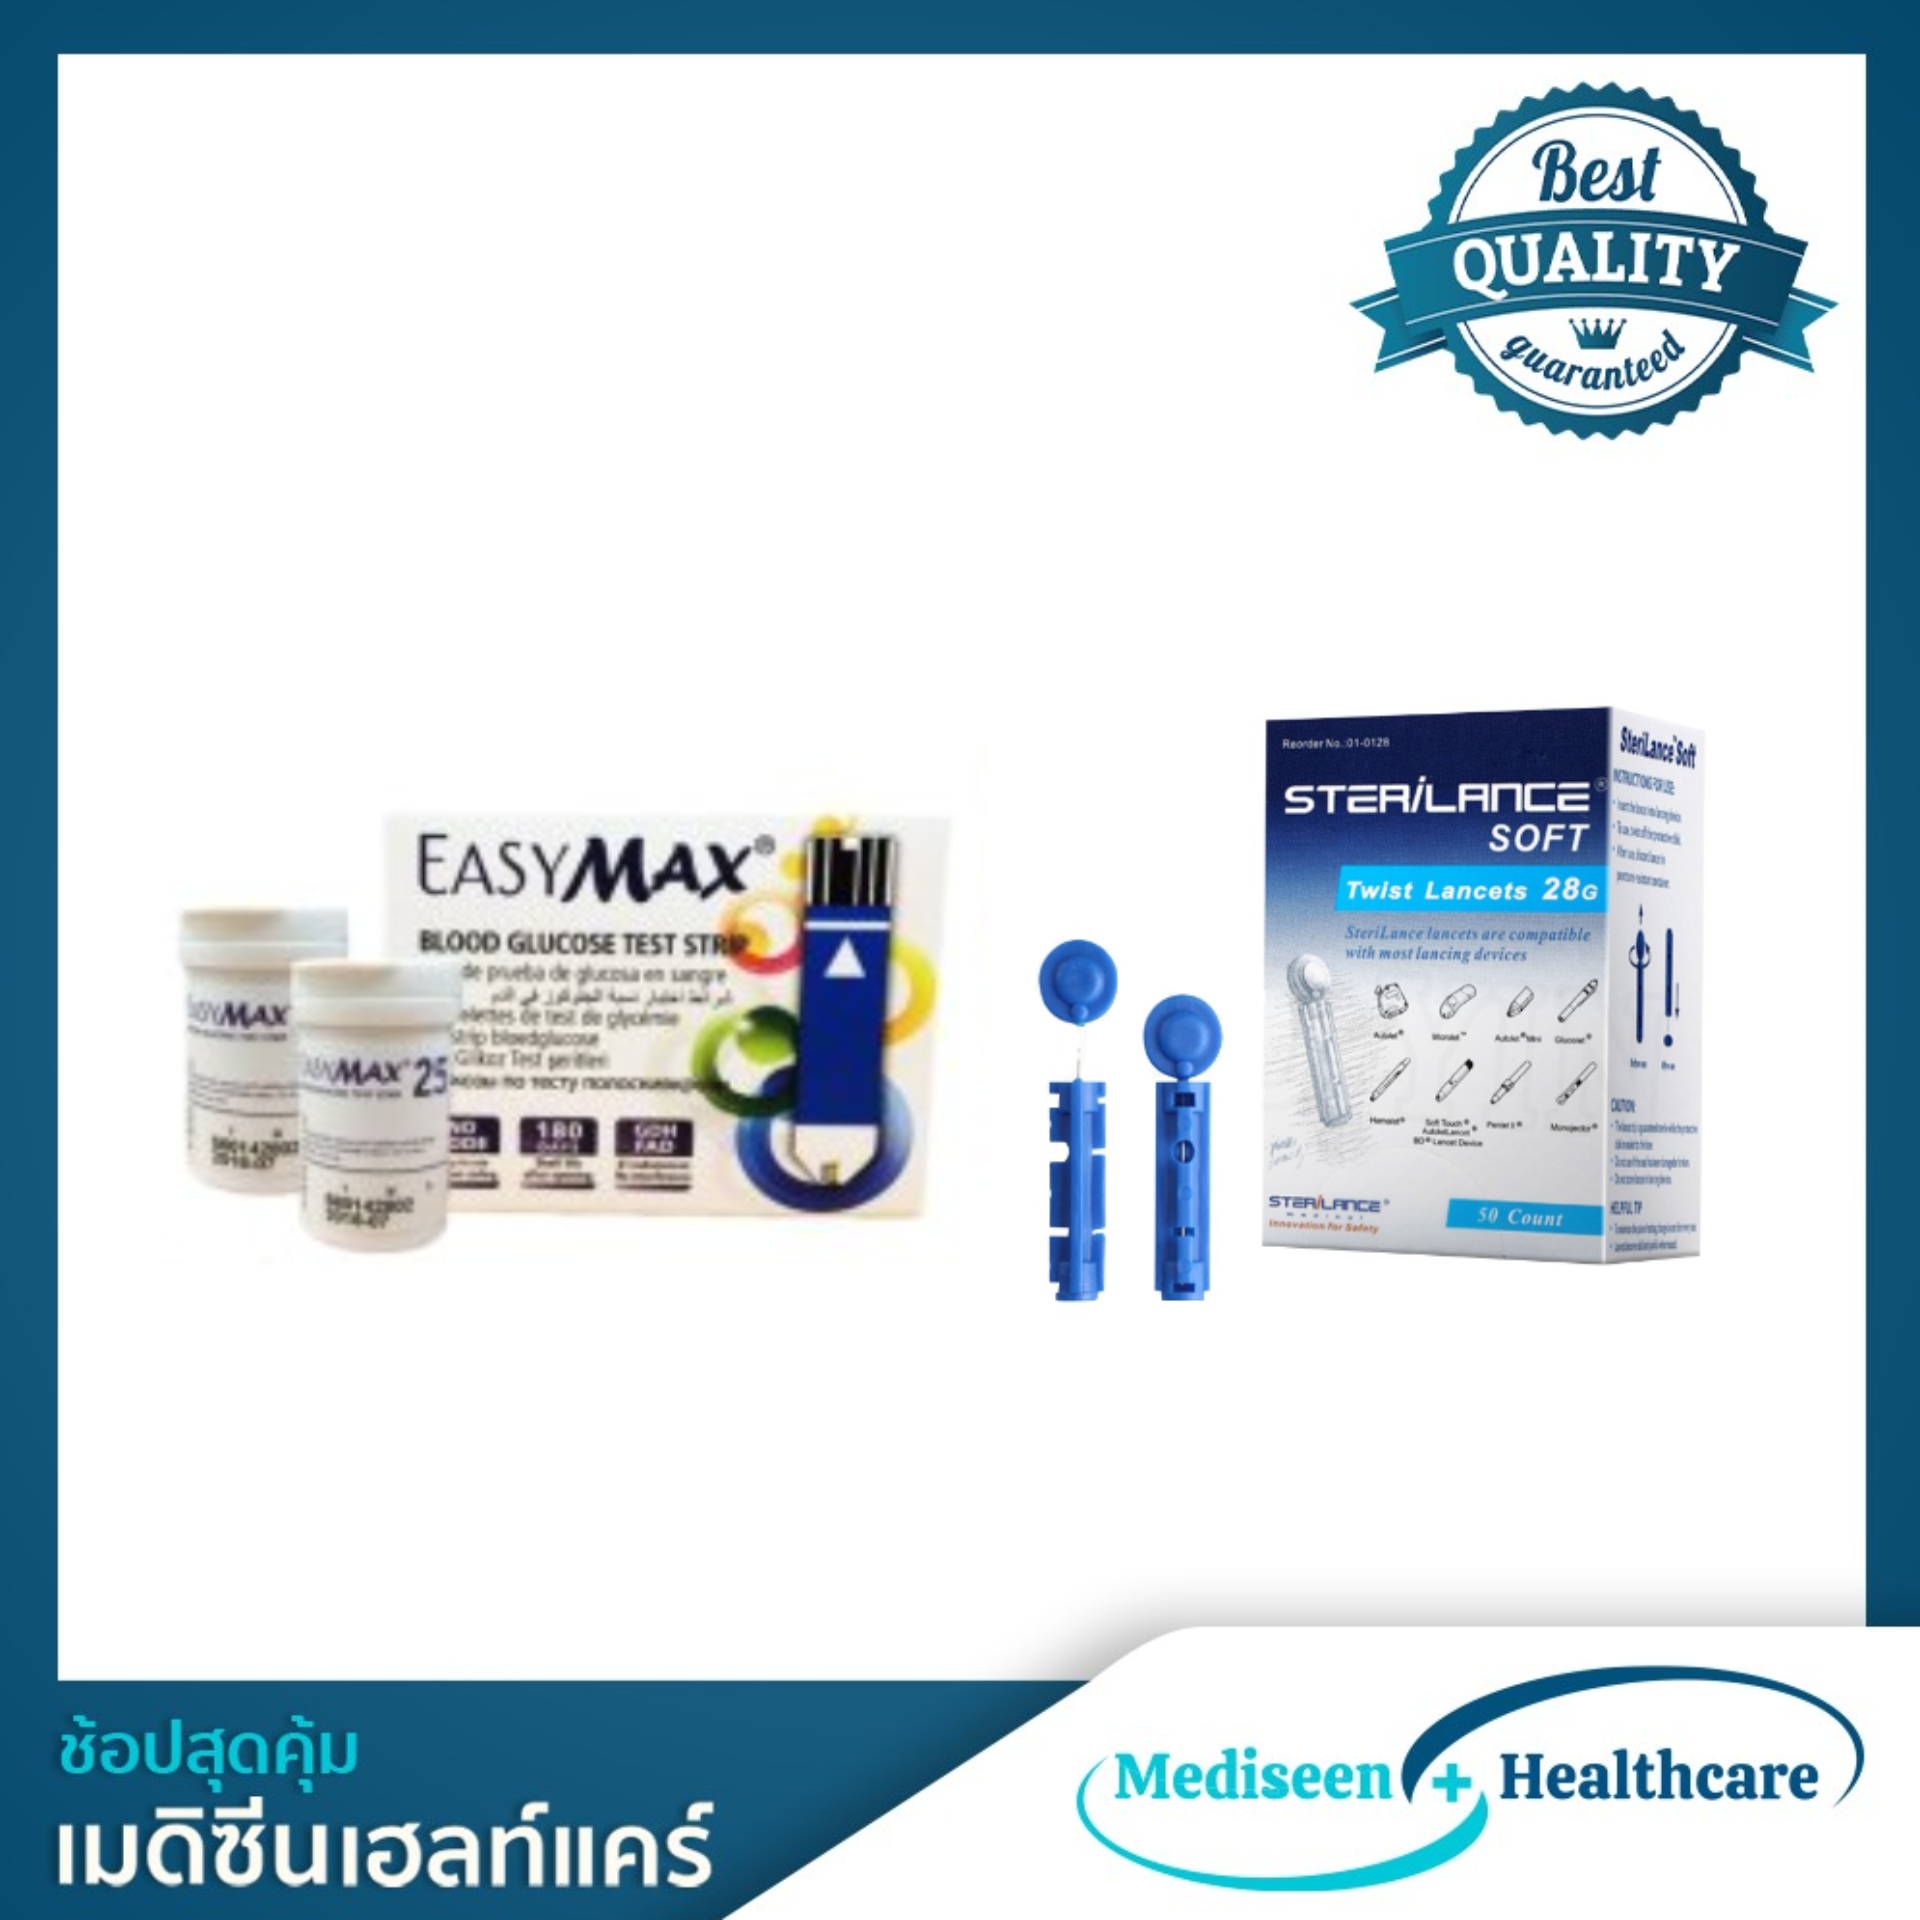 (แถบตรวจเบาหวานและเข็มเจาะ) Easy Max แถบตรวจน้ำตาลในเลือด Blood glucose strip 50 แผ่น และ เข็มเจาะเลือด Sterilance Soft 28G 50 ชิ้น